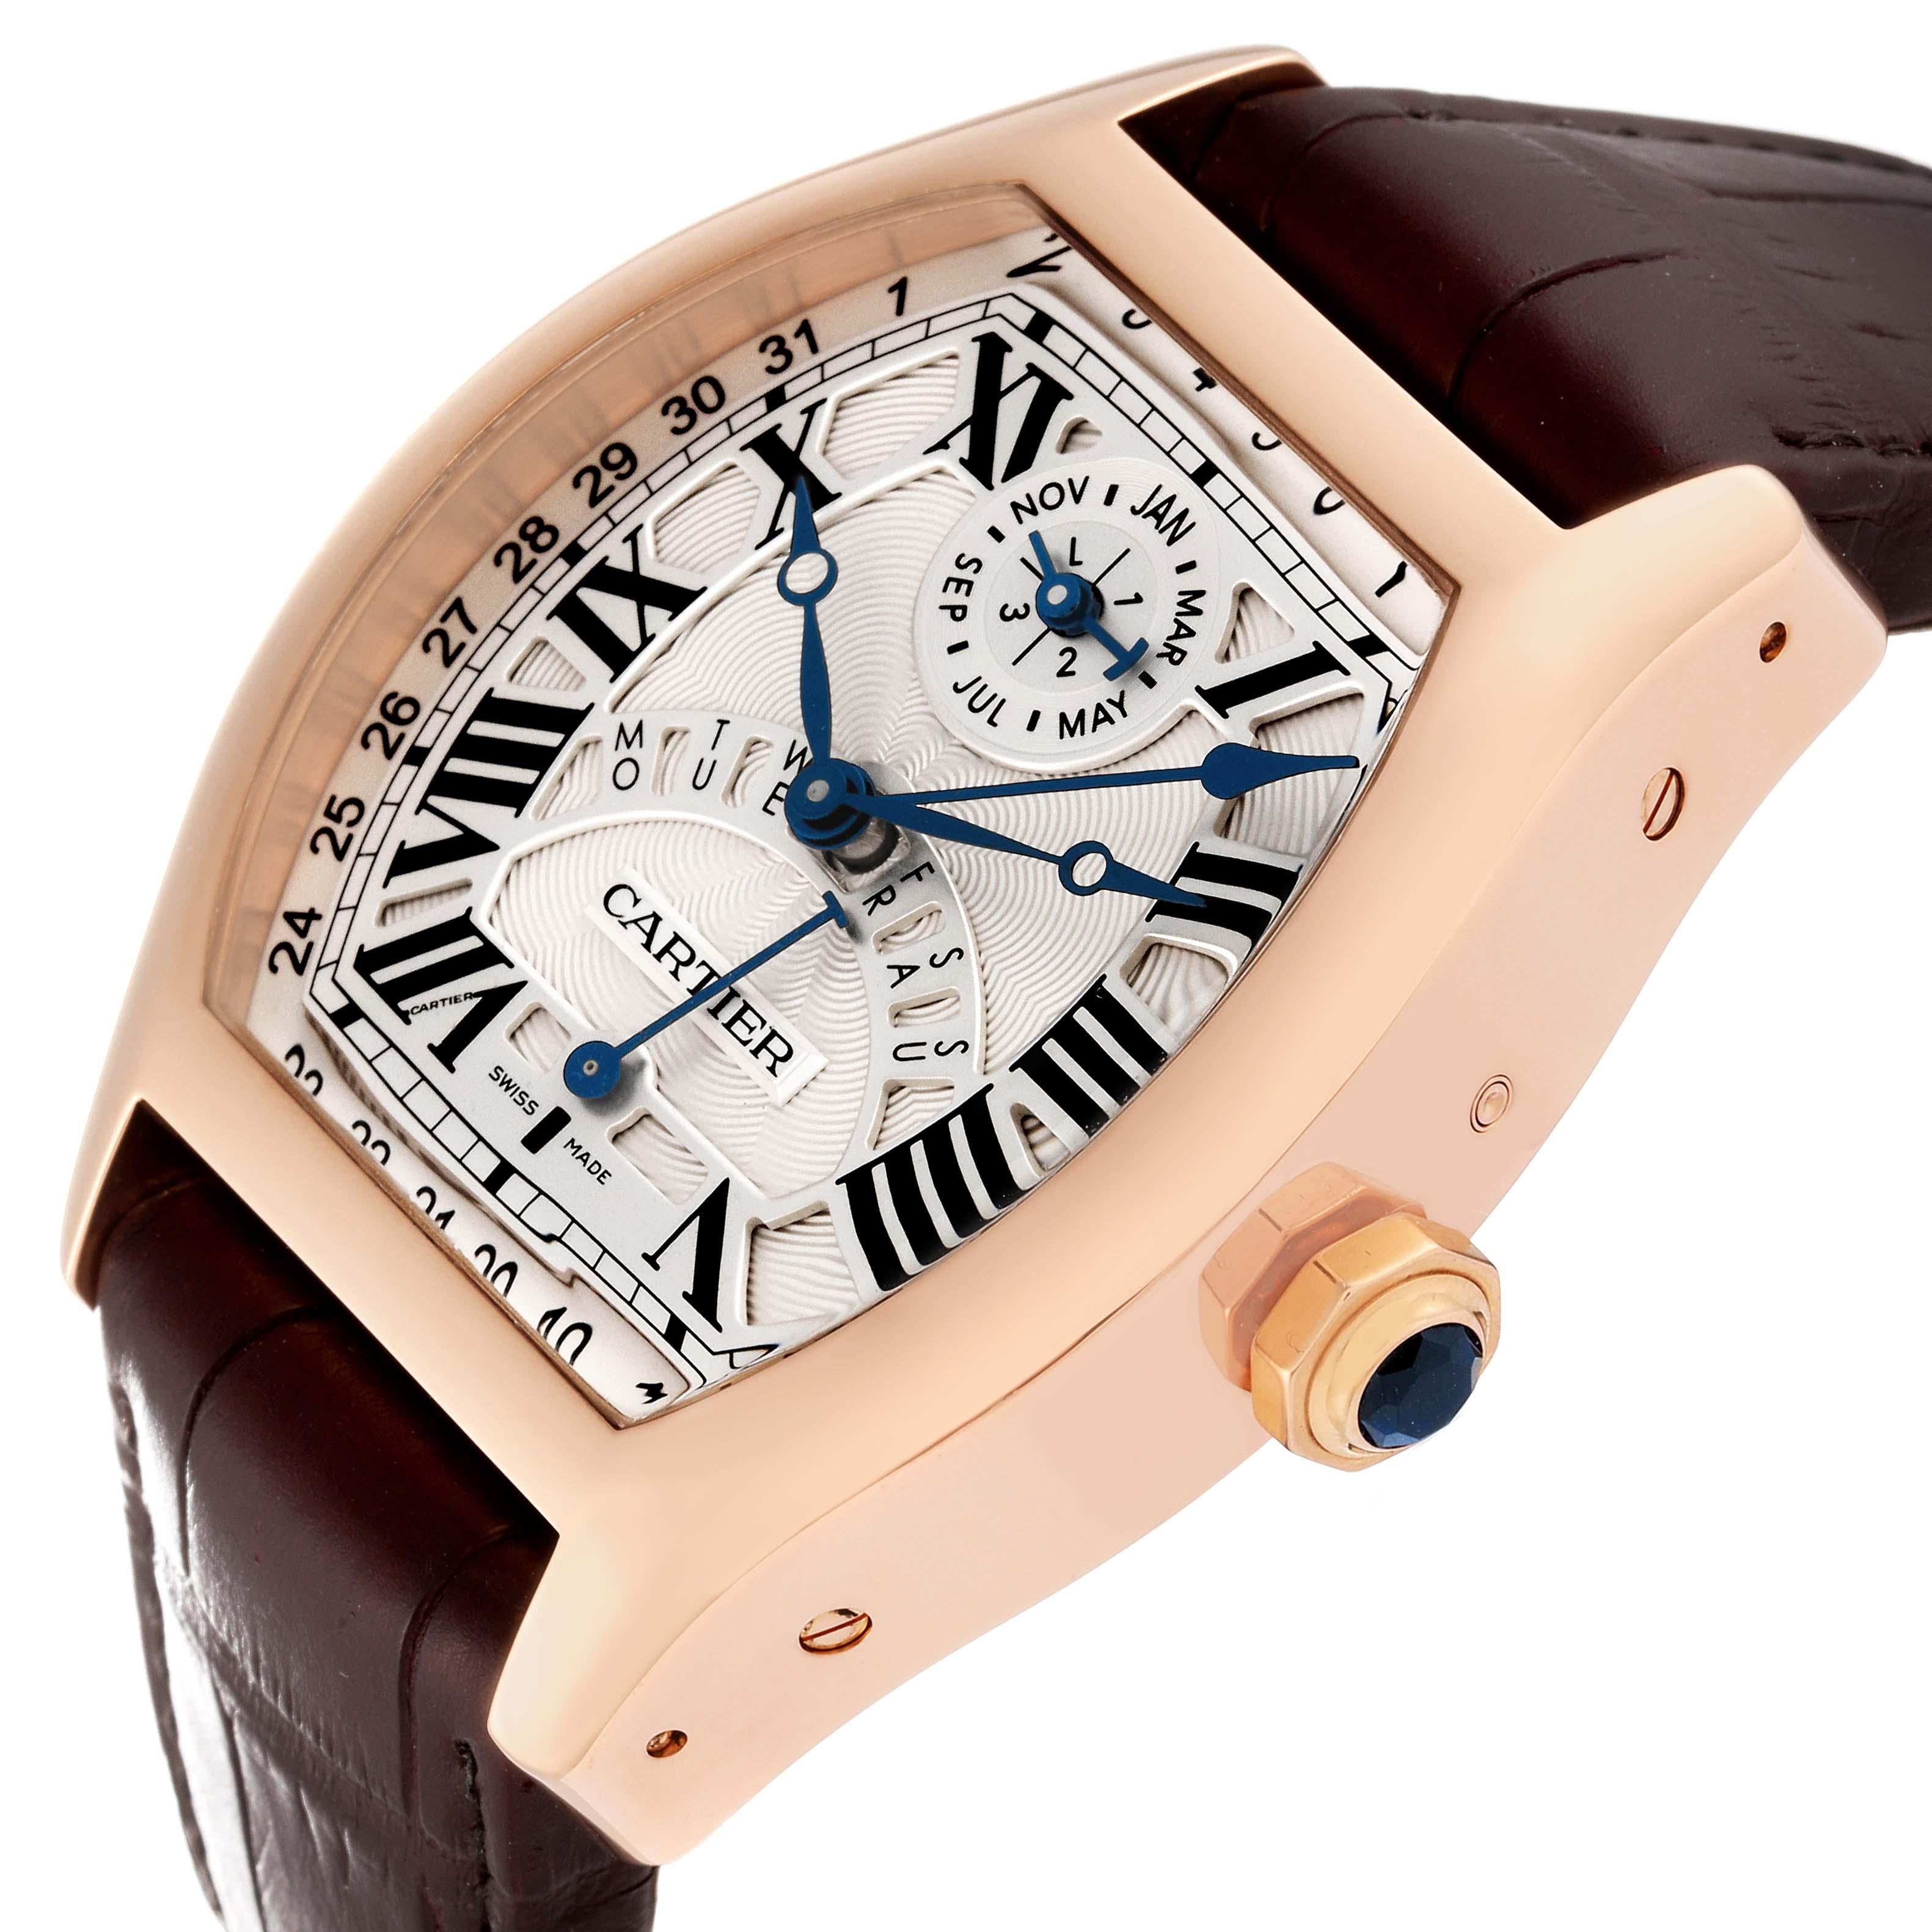 Cartier Tortue Perpetual Calendar Automatic Rose Gold Mens Watch W1580045. Mouvement automatique à remontage. Boîtier en or rose 18 carats de forme Tonneau 45,6 mm x 51 mm. L'épaisseur du boîtier est de 16,8 mm. Couronne octogonale sertie d'un